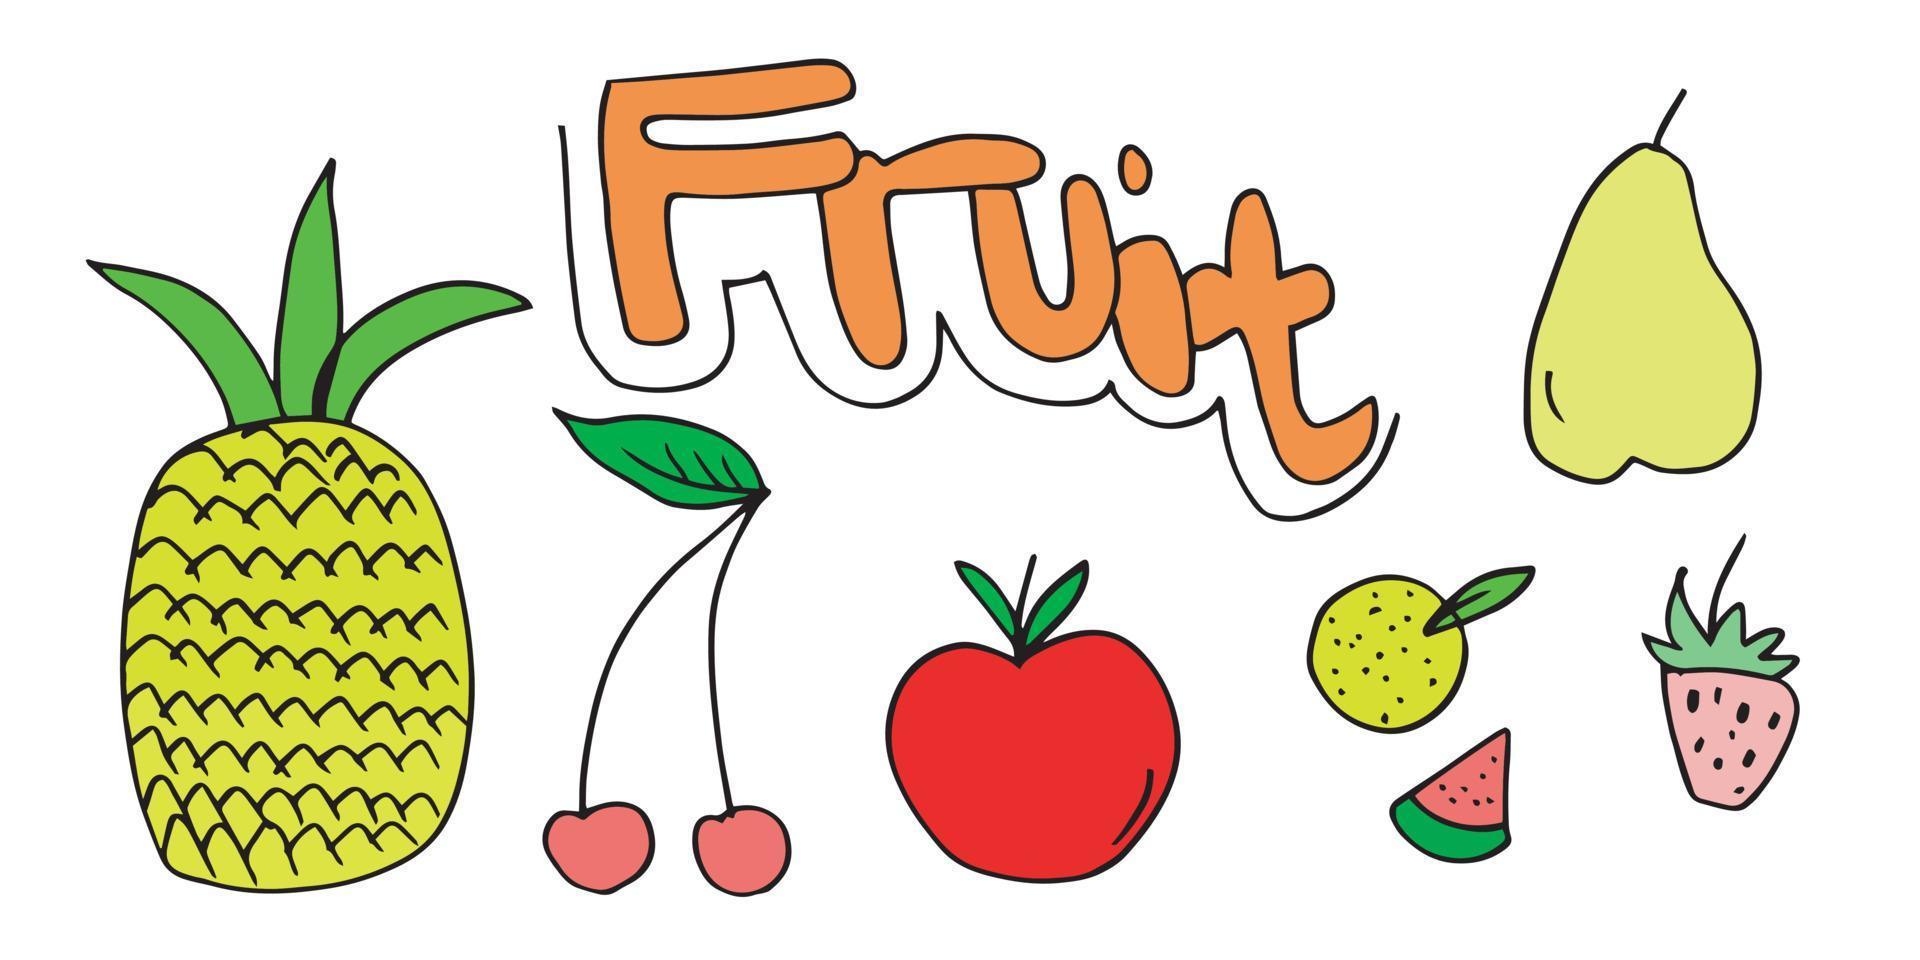 juego de frutas de fideos. dibujo a mano de frutas en diferentes estilos. vector